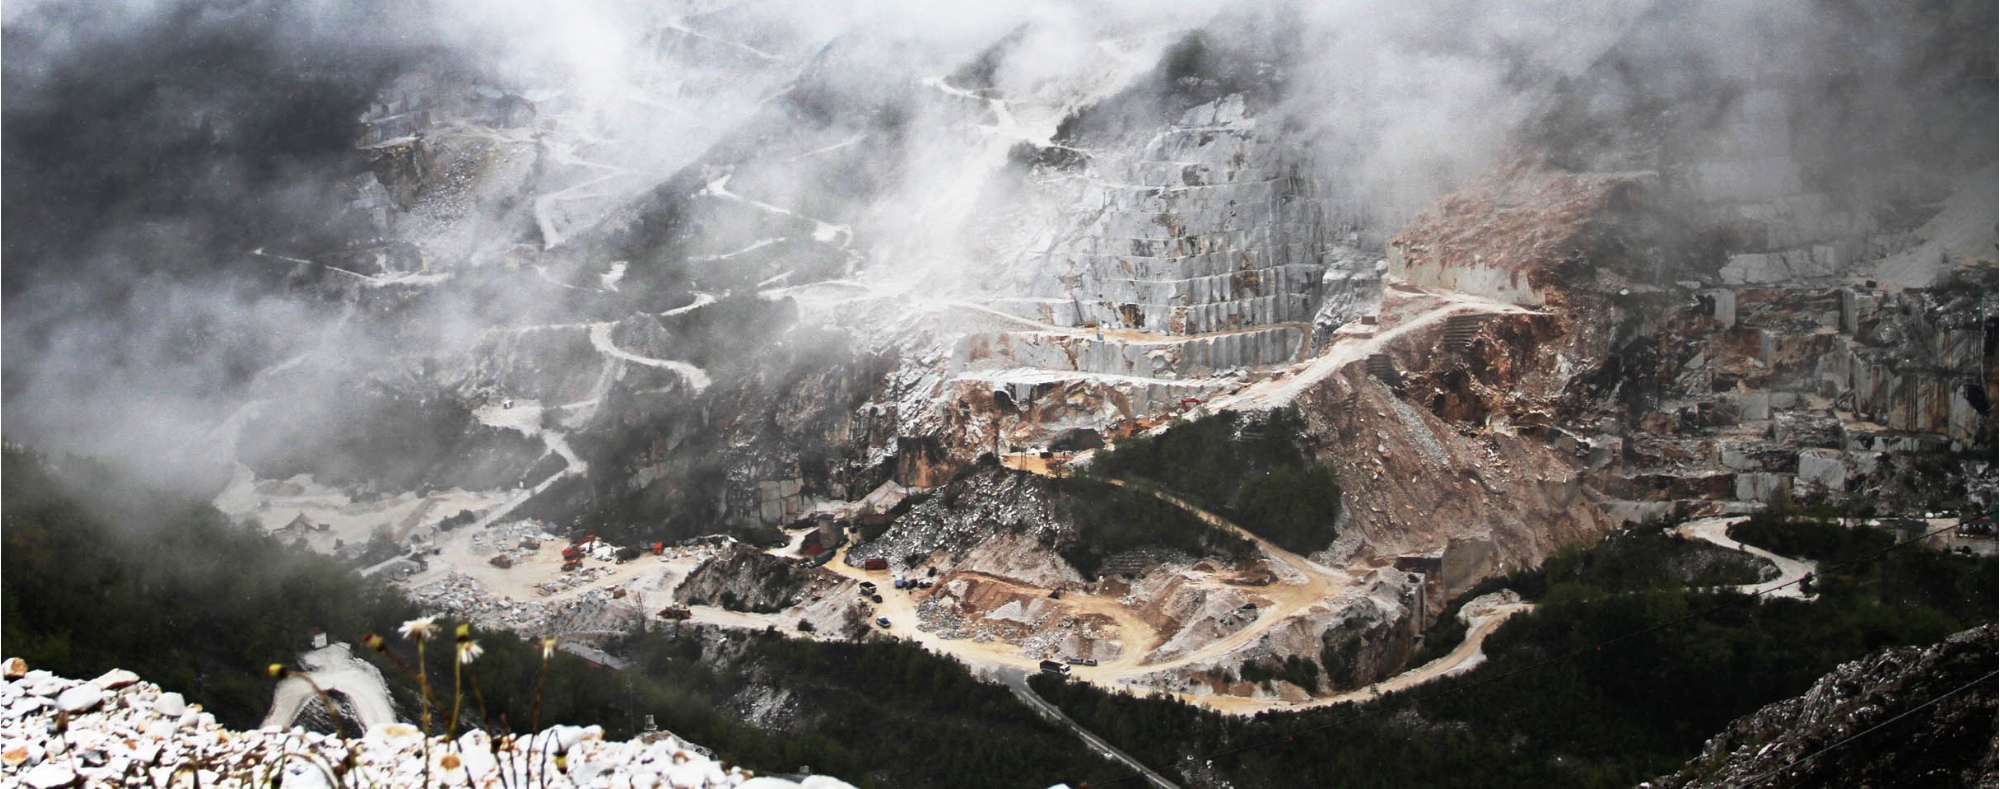 Carrara marble quarries